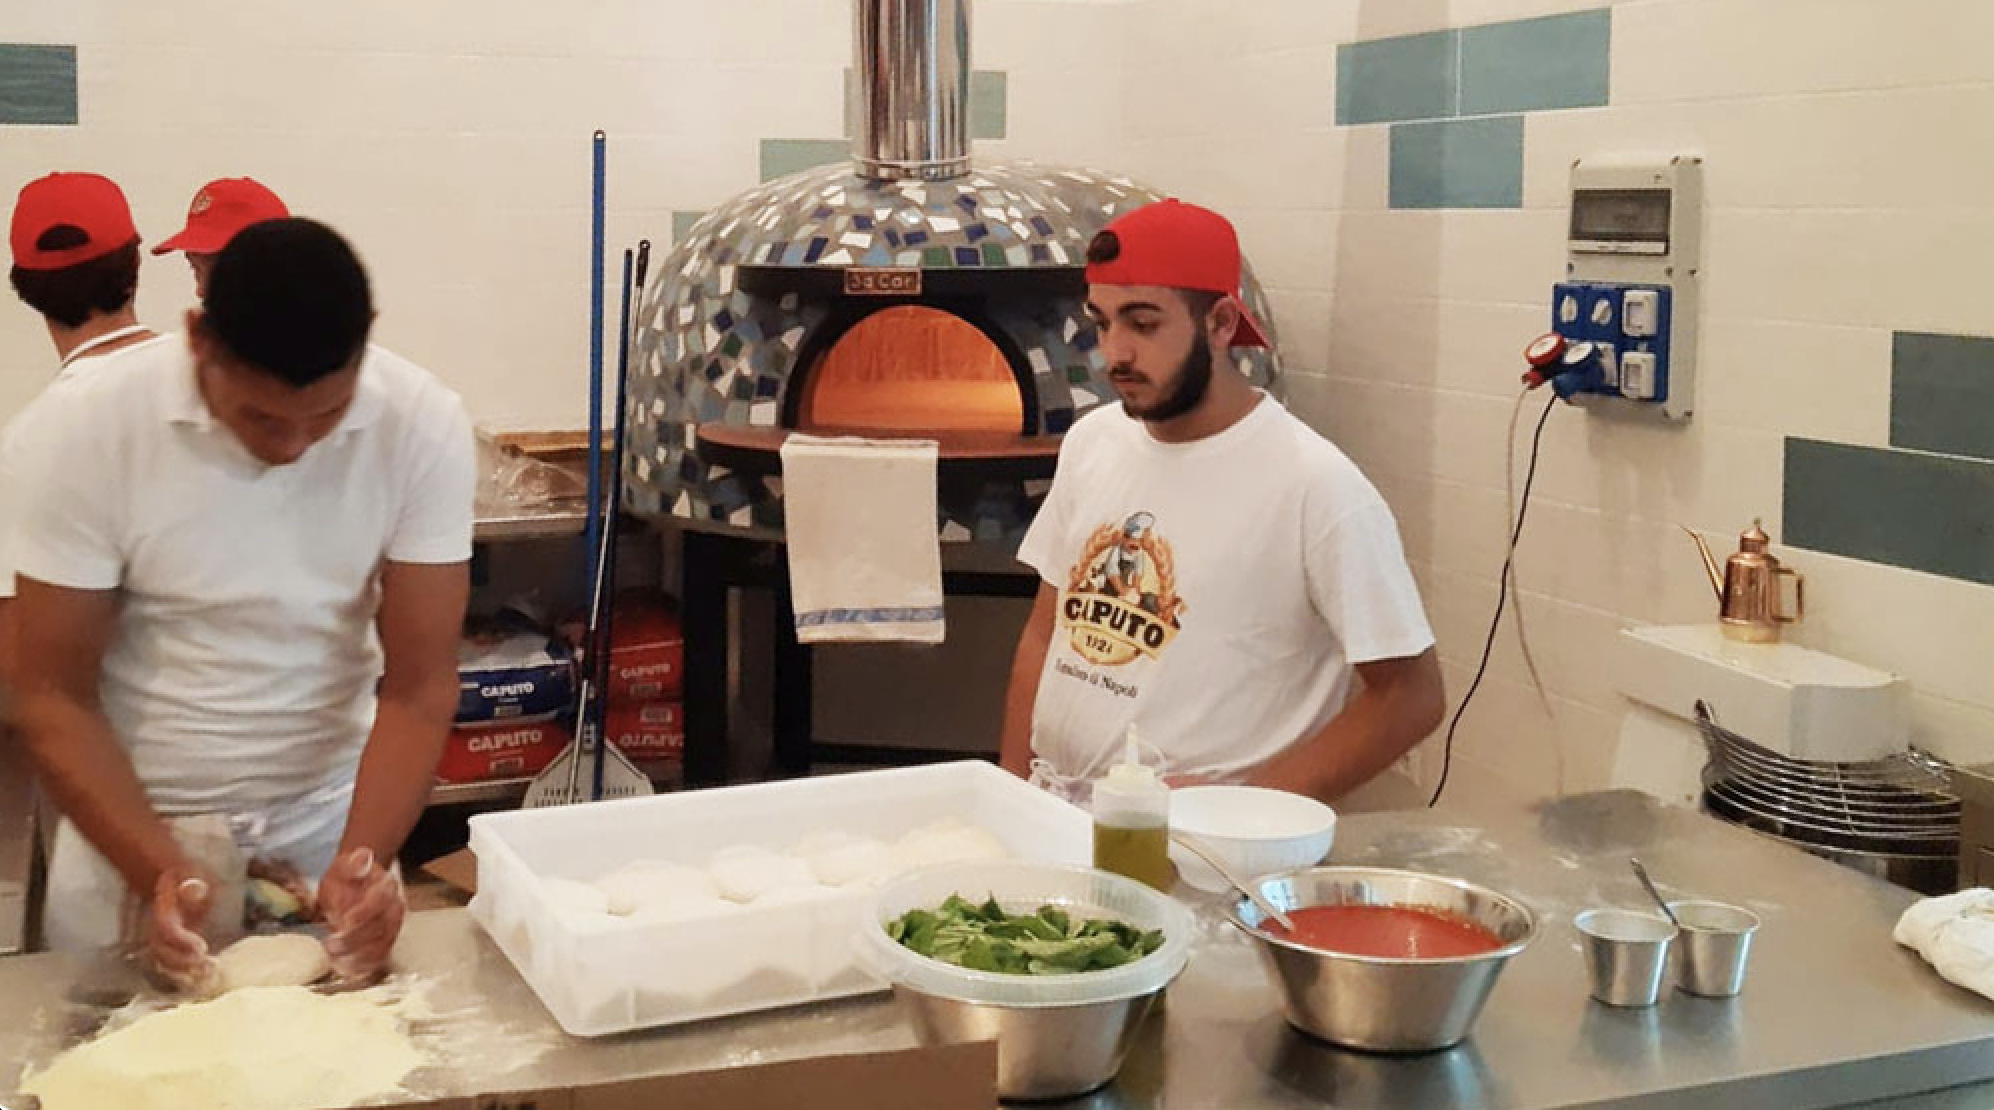 Il "Pizzoratorio": come affrontare la malavita a base di pizza